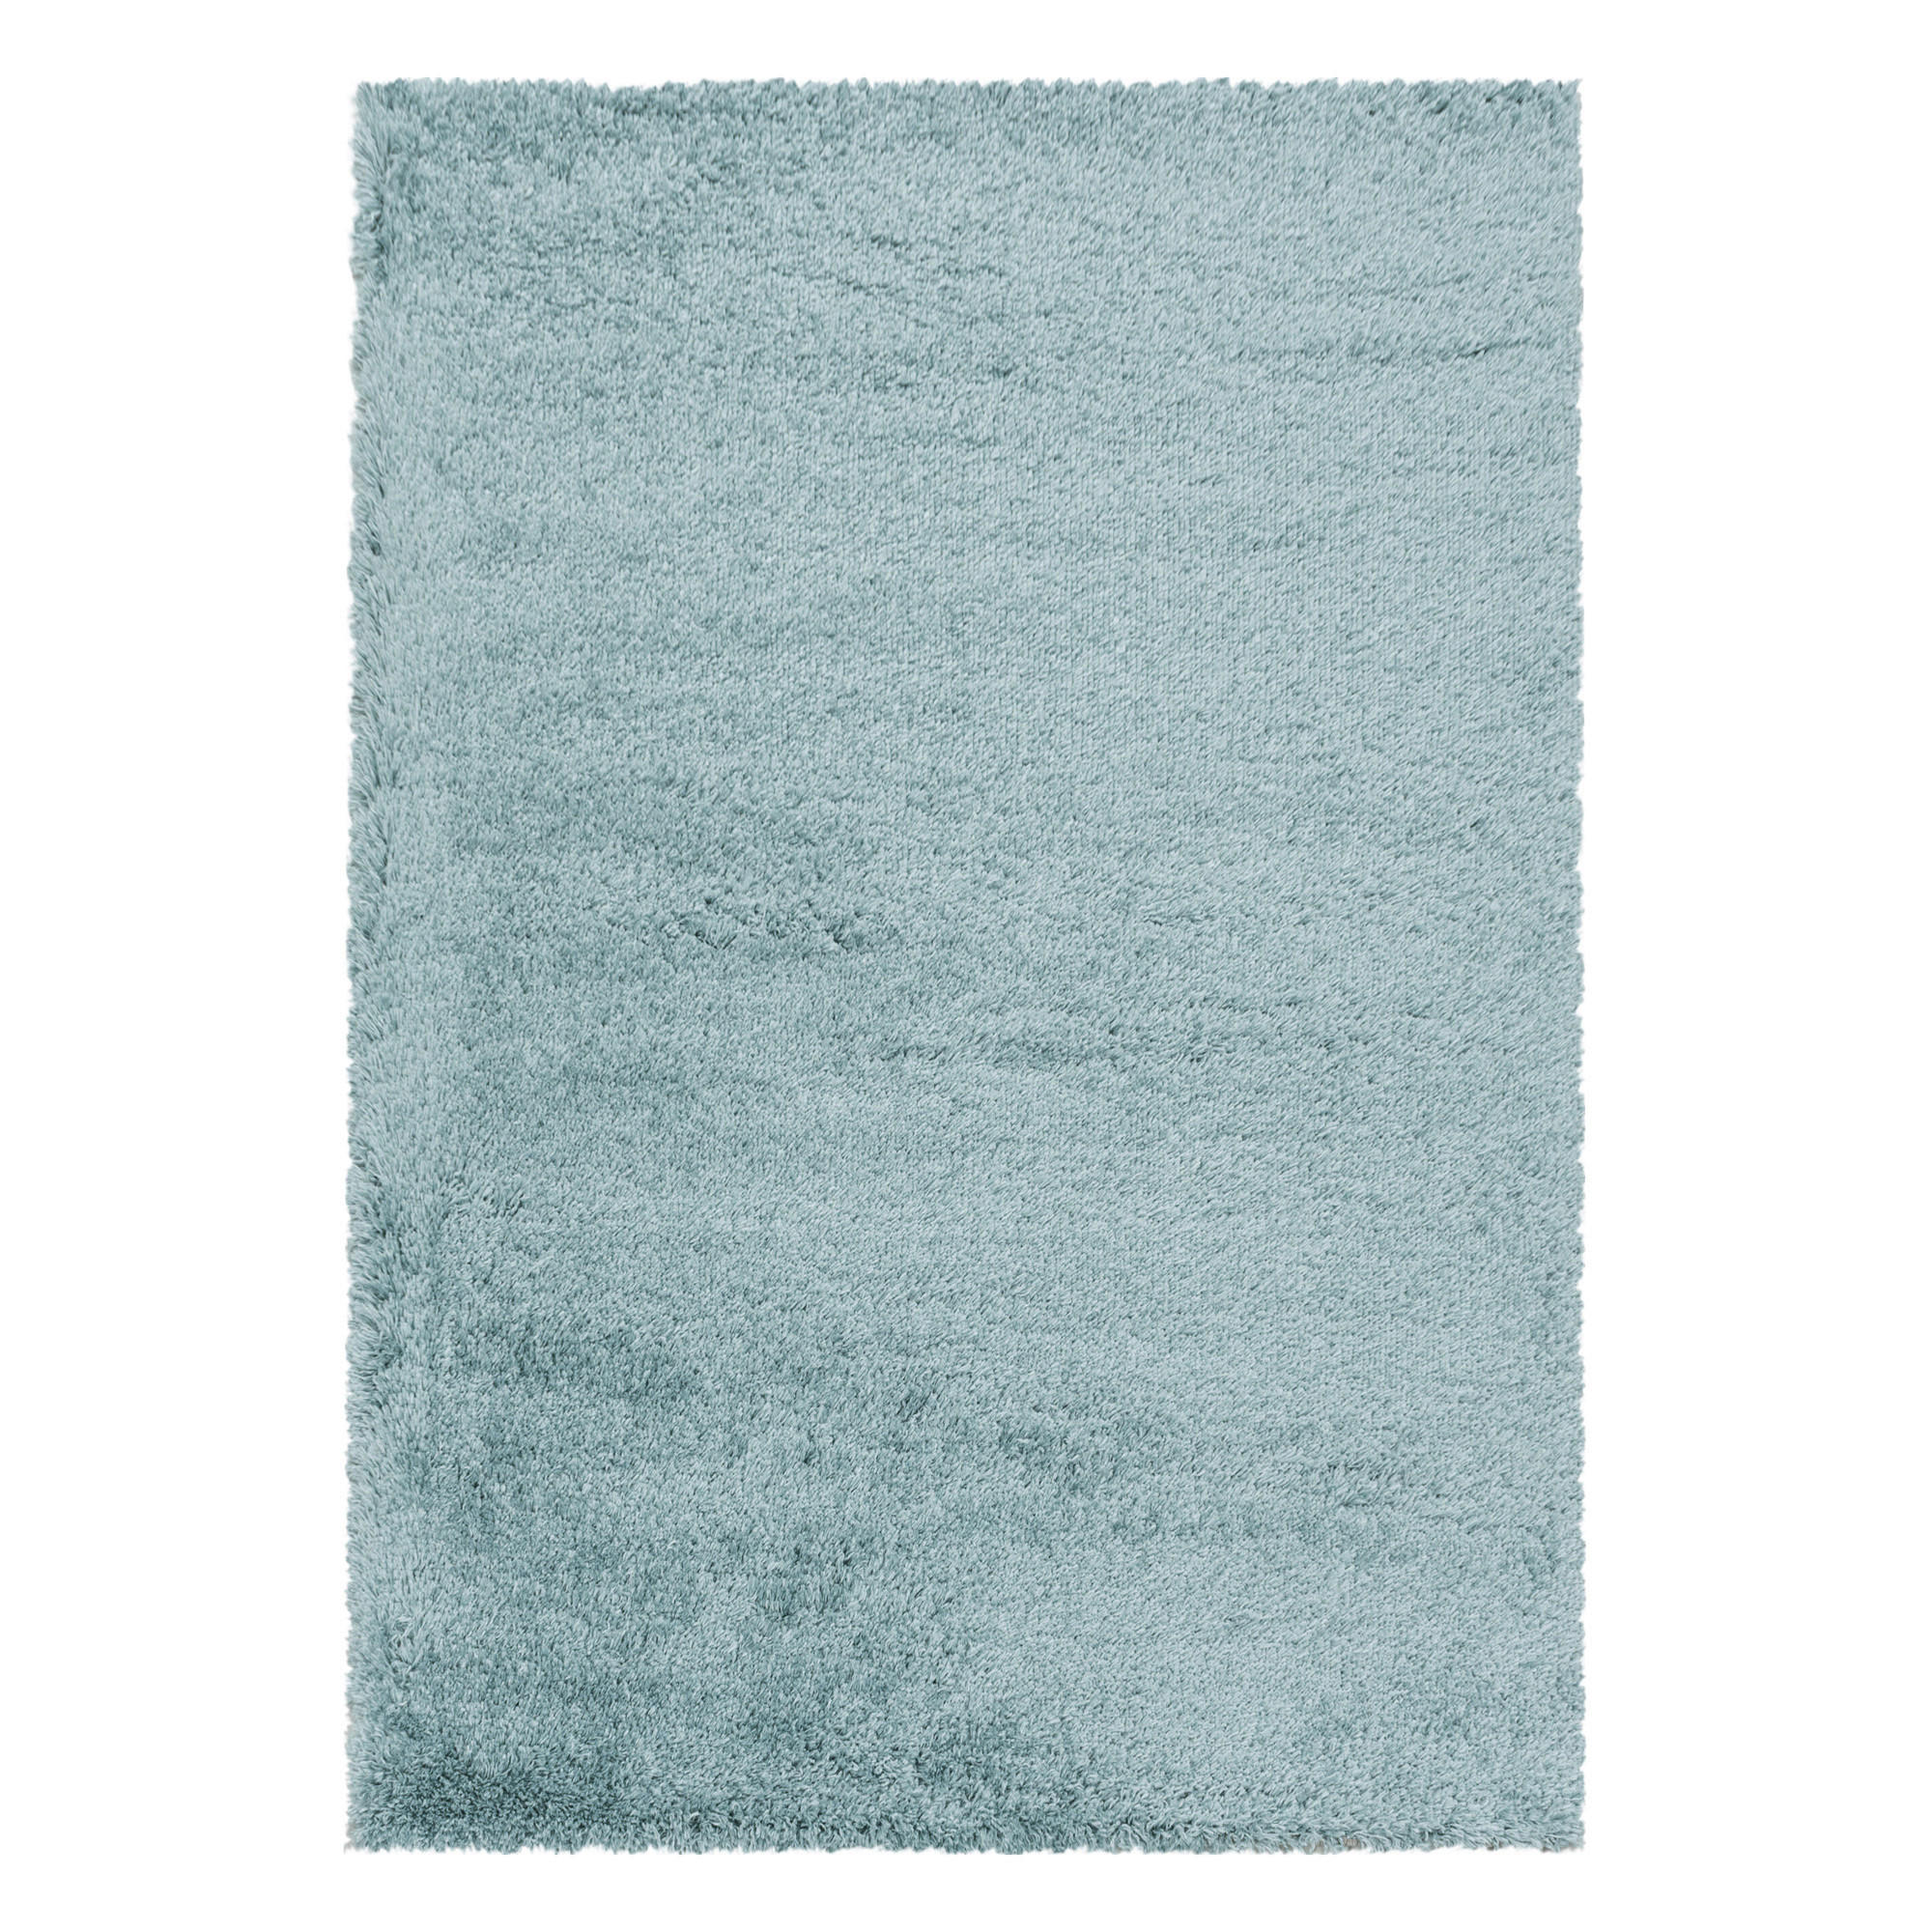 LÄUFER  80/250 cm  Blau  - Blau, Basics, Textil (80/250cm) - Novel